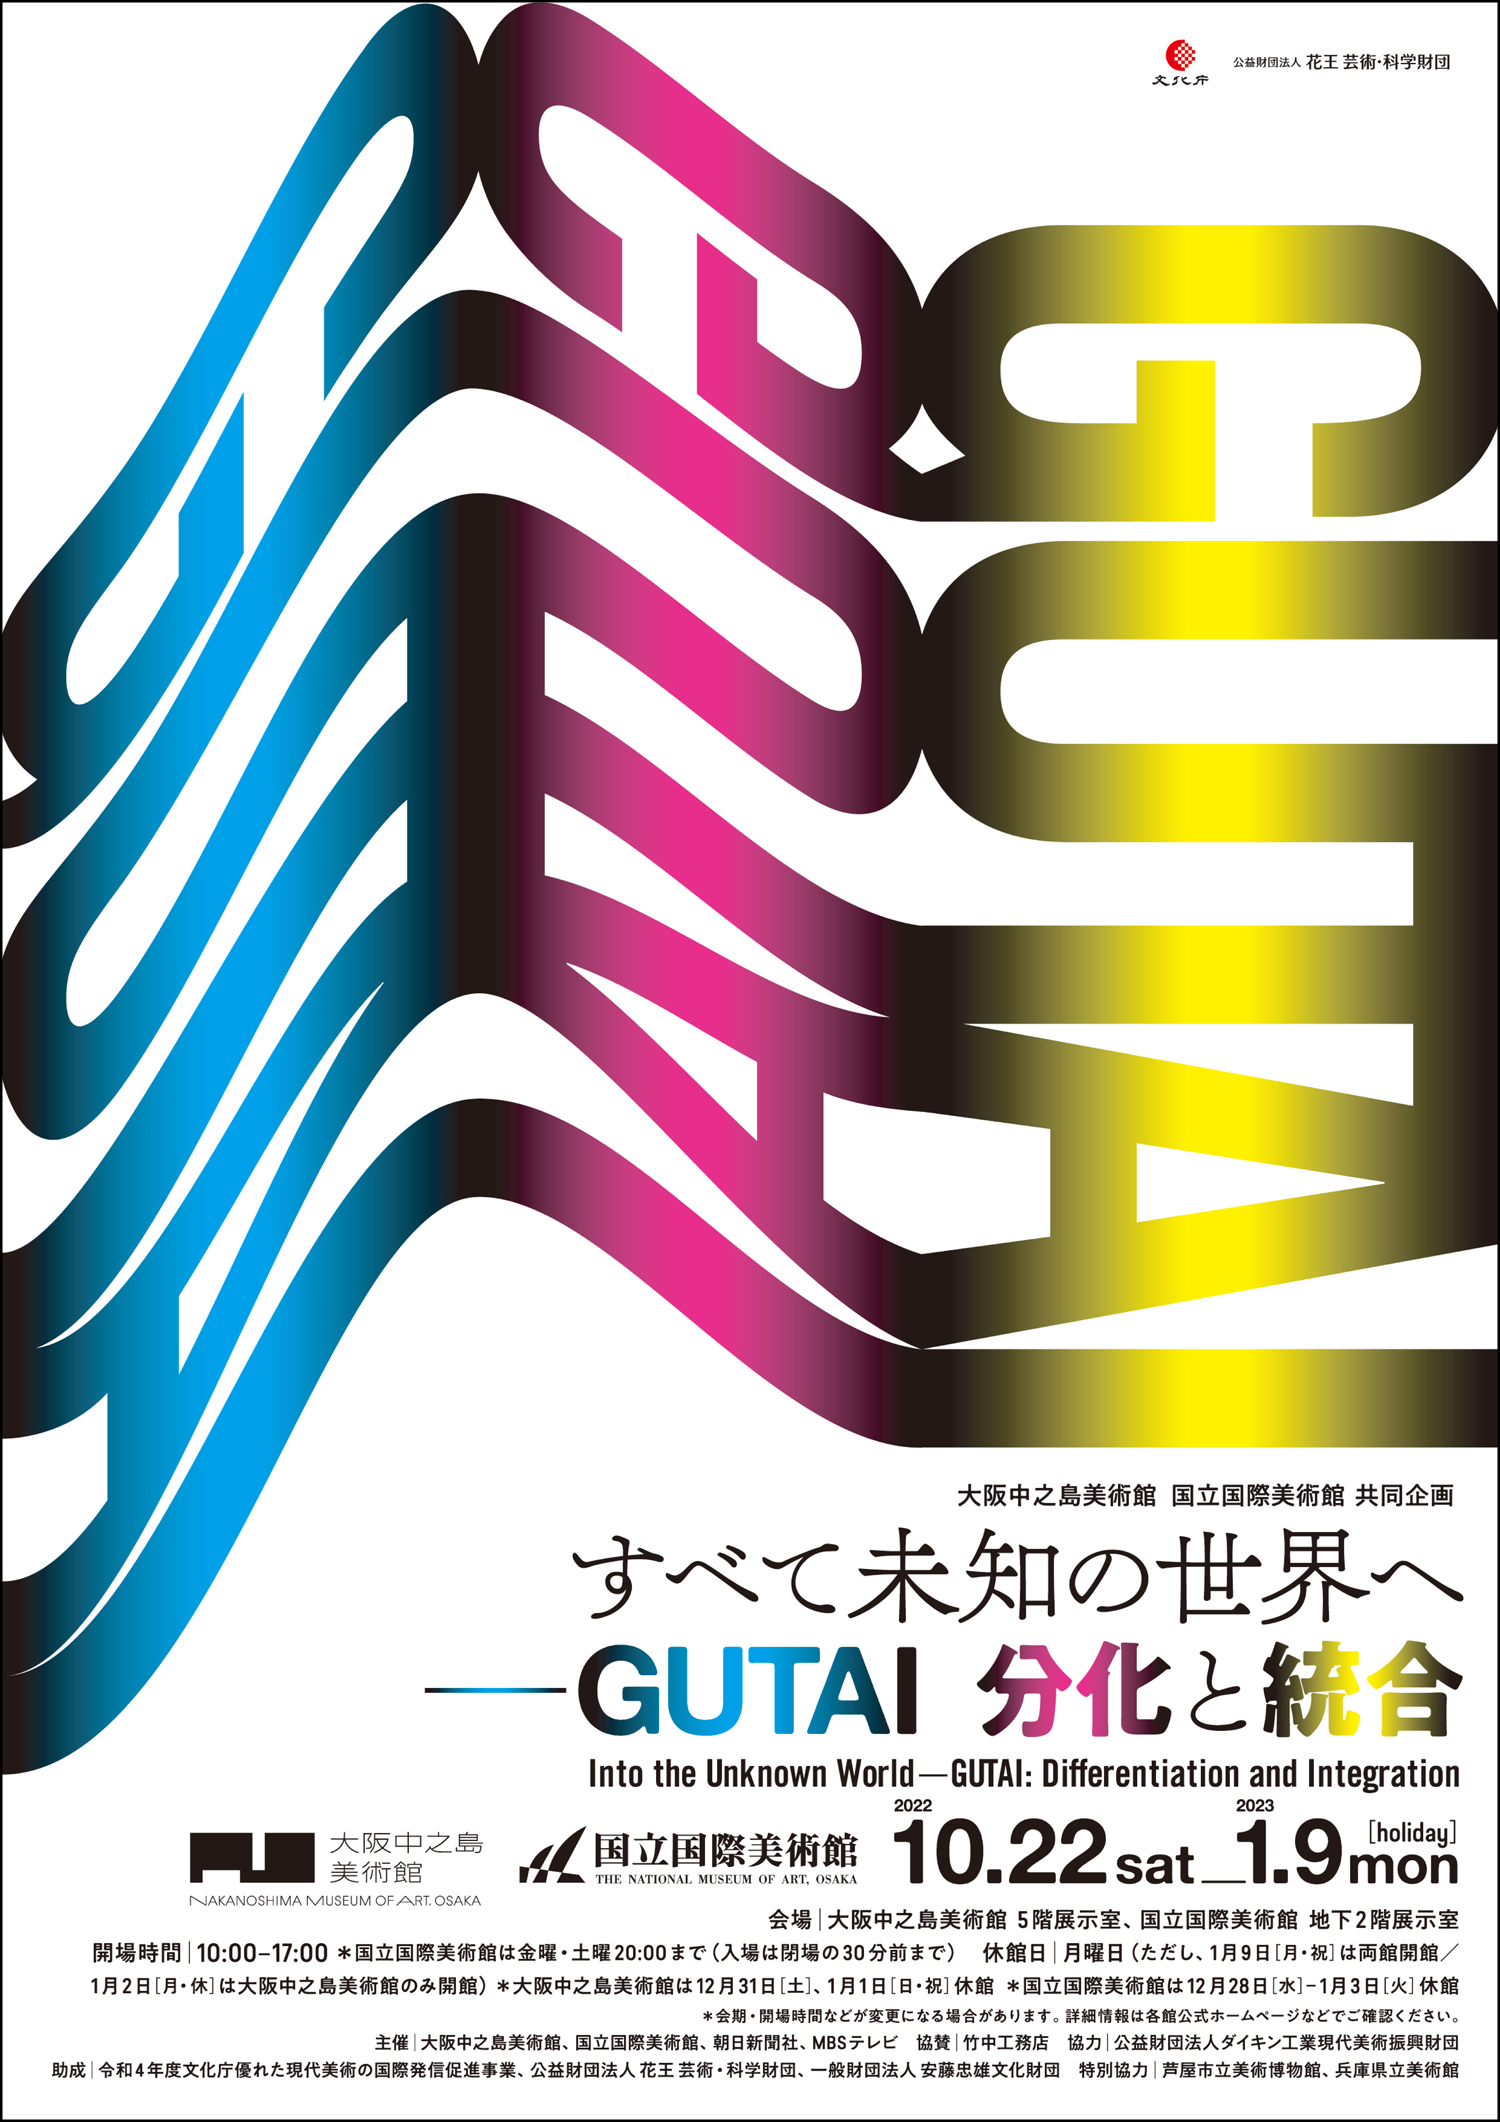 大阪中之島美術館　国立国際美術館　共同企画「すべて未知の世界へ ー GUTAI 分化と統合」